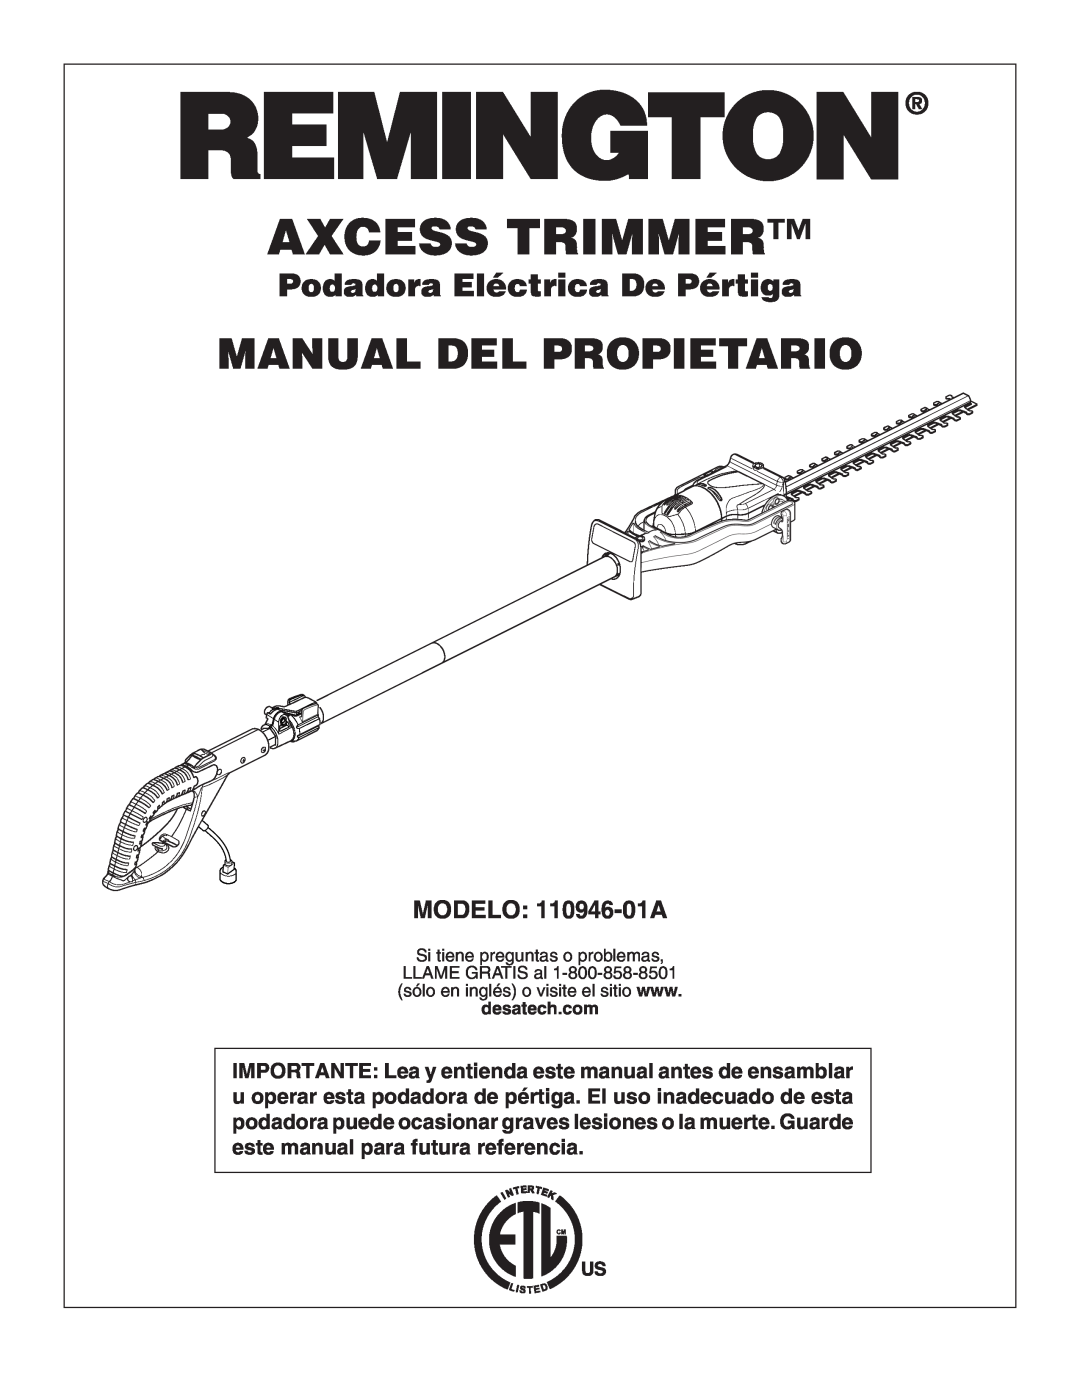 Desa owner manual Manual Del Propietario, Podadora Eléctrica De Pértiga, MODELO 110946-01A, Axcess Trimmer 